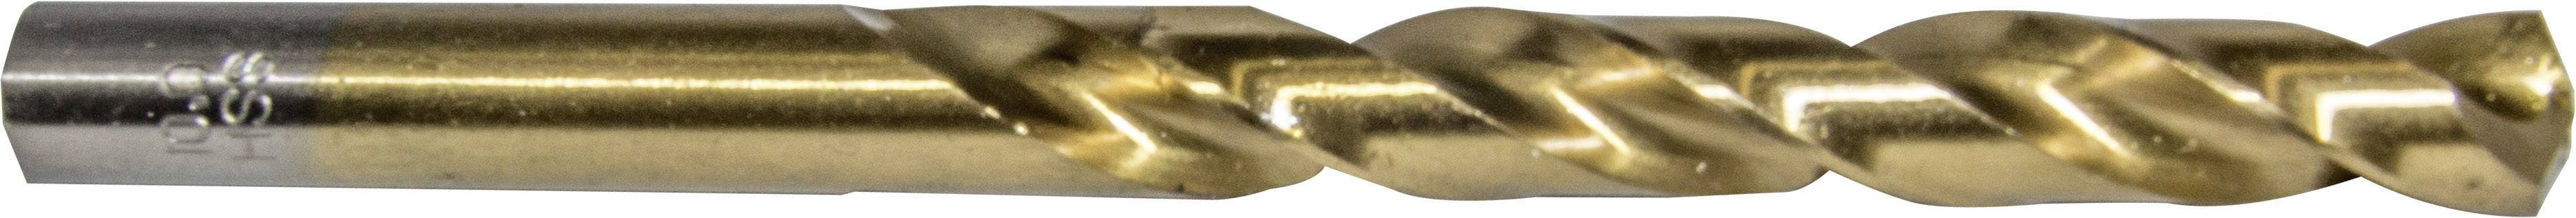 HELLER 29261 0 Metall-Spiralbohrer 1 Stück 4.2 mm Gesamtlänge 75 mm 1 St.